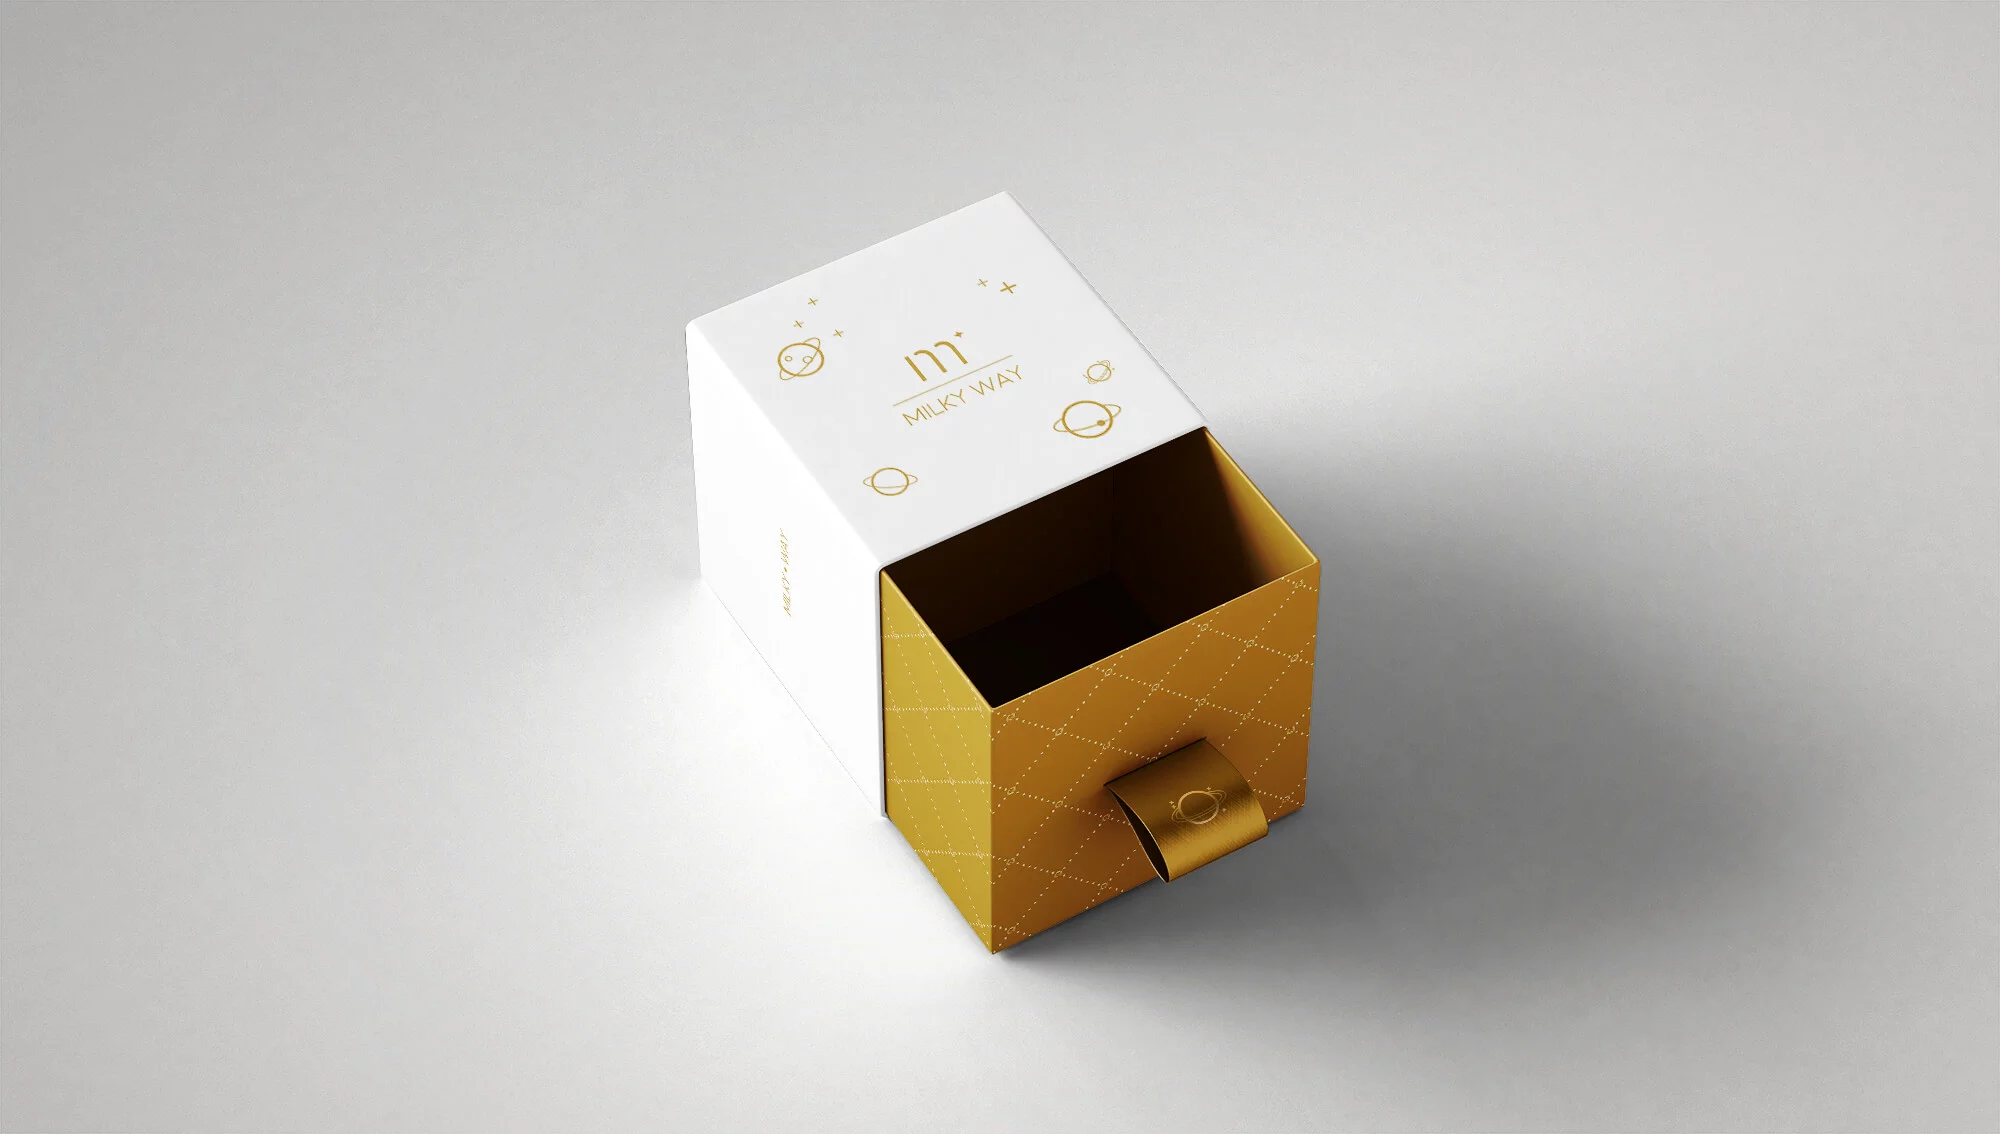 產品包裝 | 盒形設計 | 各類包裝設計就讓傑克大俠來協助您創造經典設計